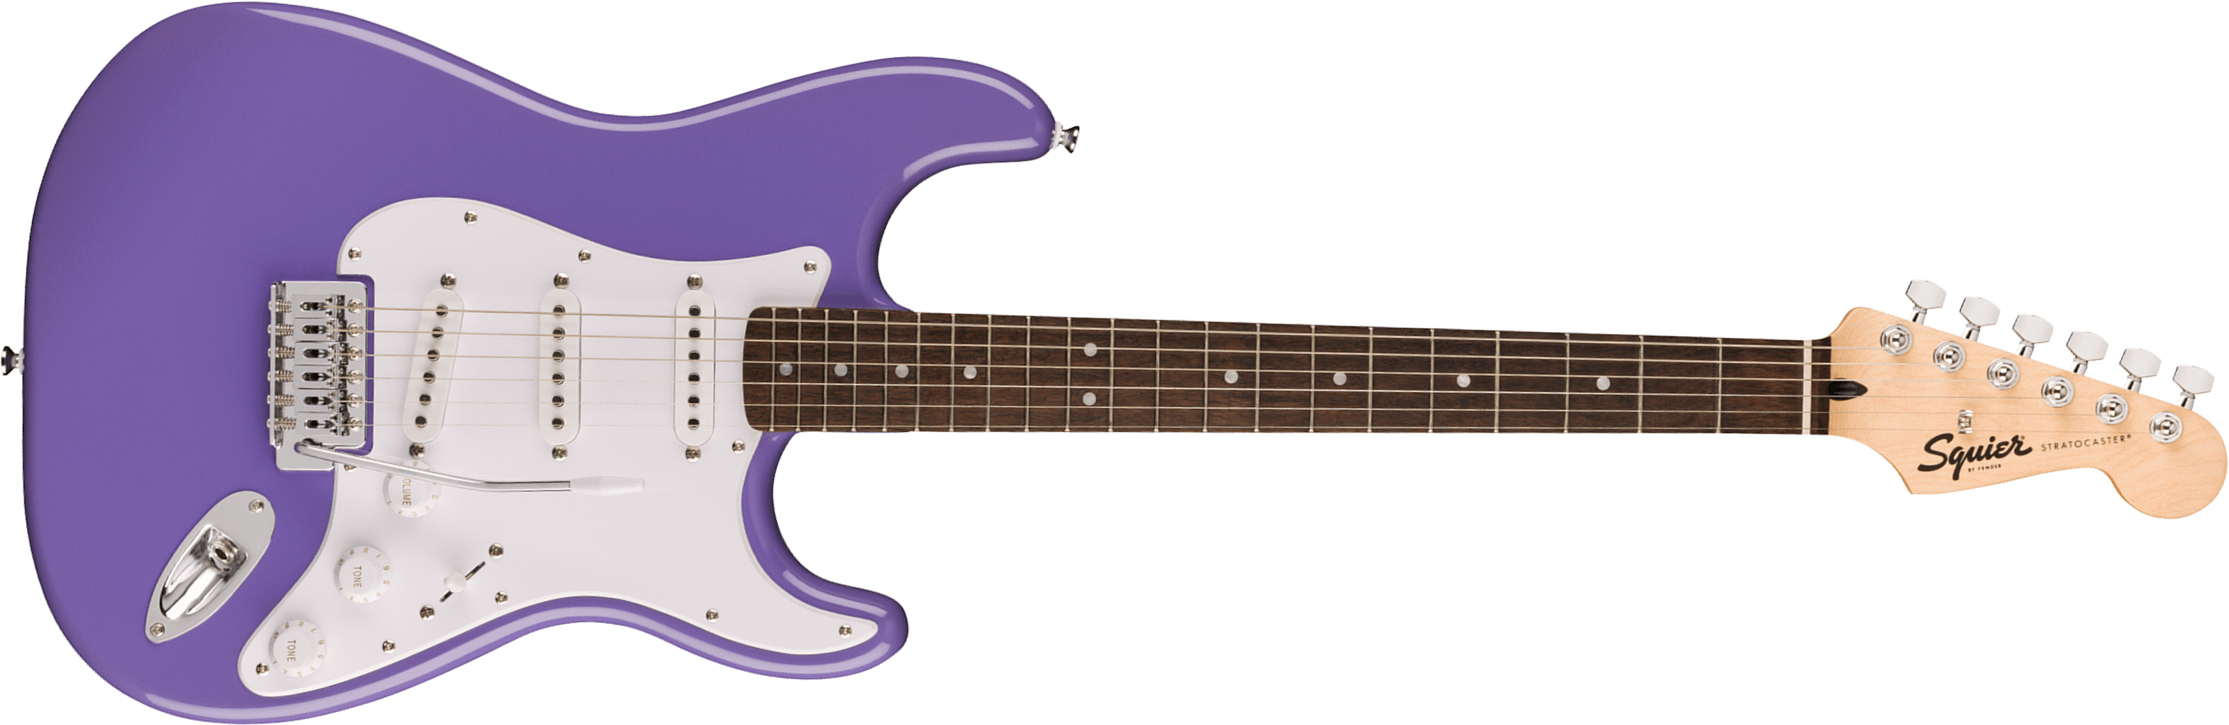 Squier Strat Sonic 3s Trem Lau - Ultraviolet - Guitarra eléctrica con forma de str. - Main picture